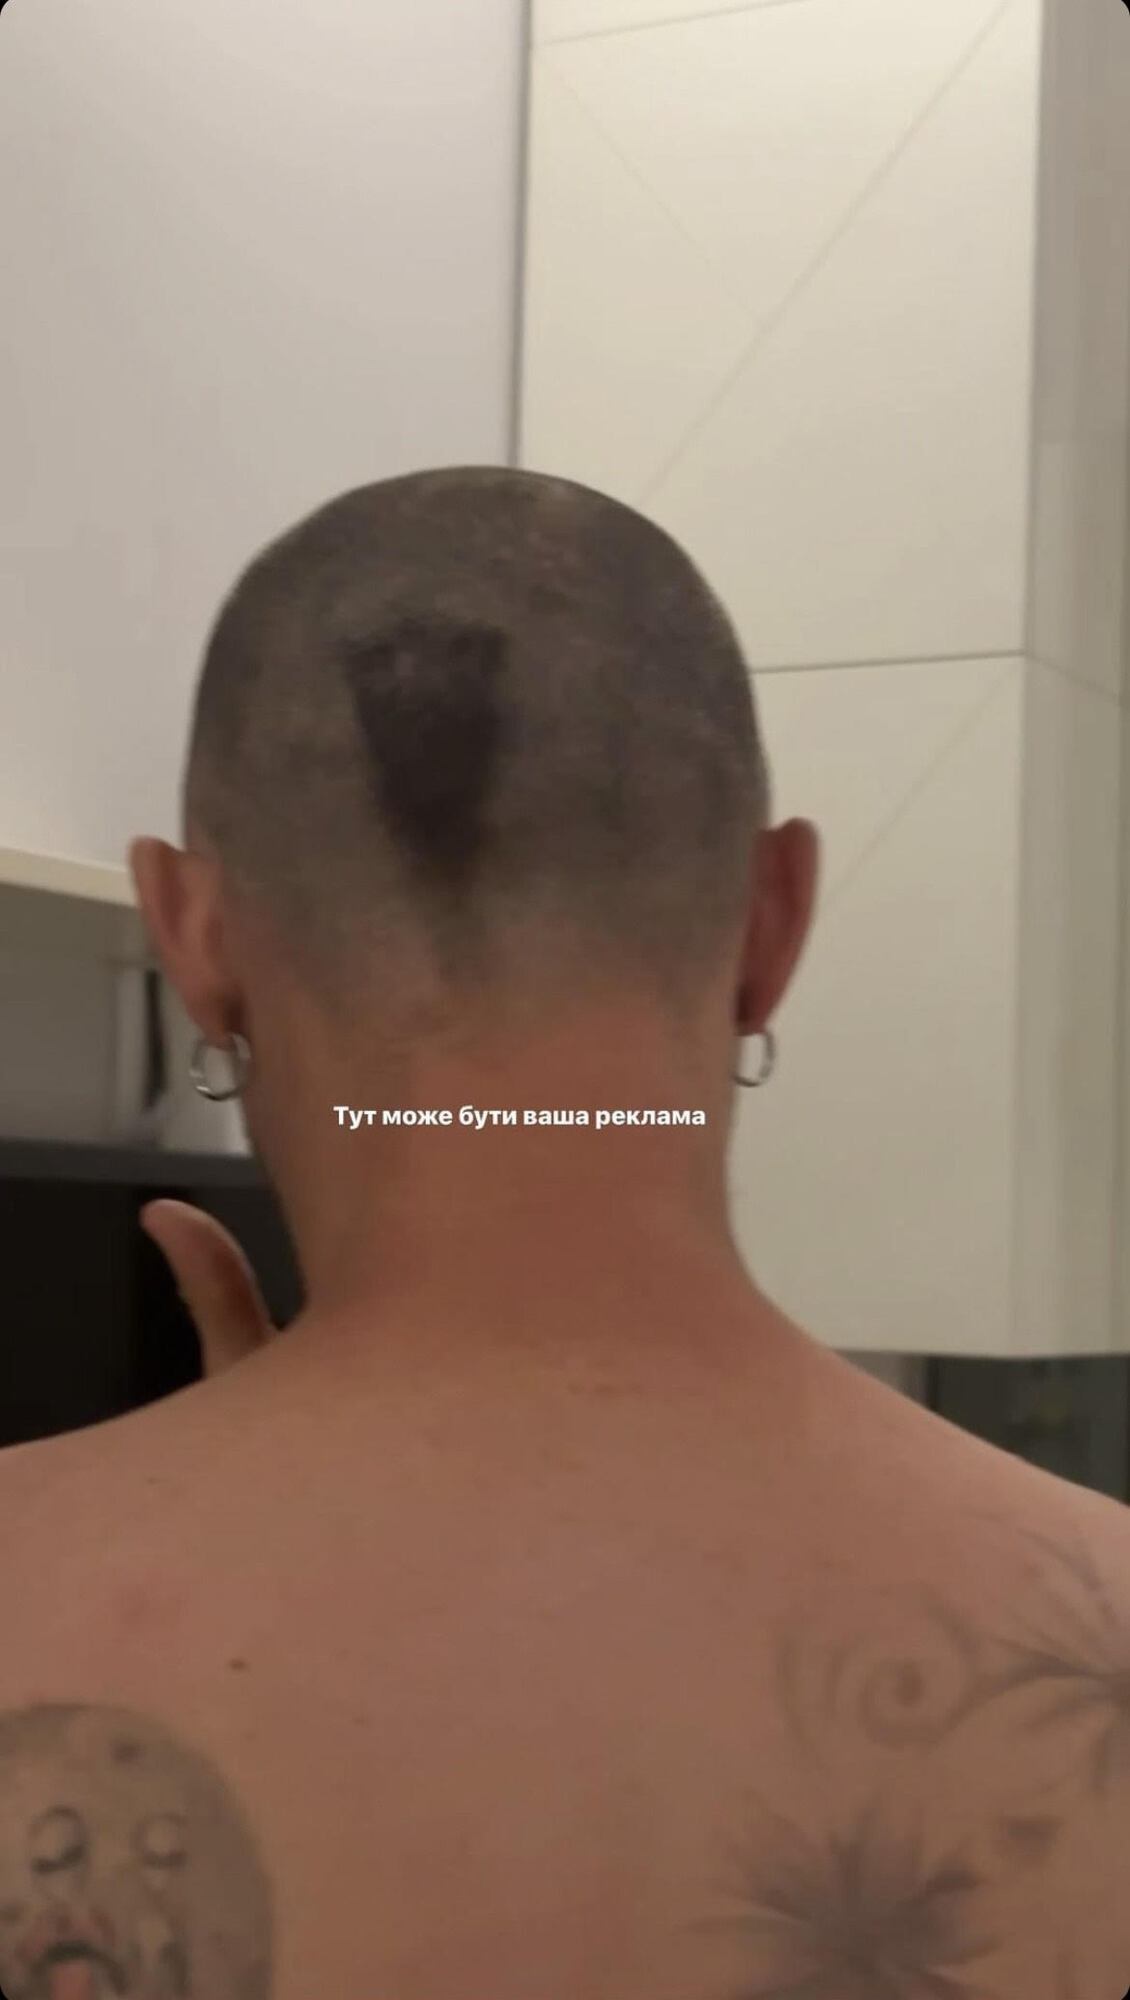 Подстригся, но не совсем: Дорофеева провела опрос по названию новой прически мужа